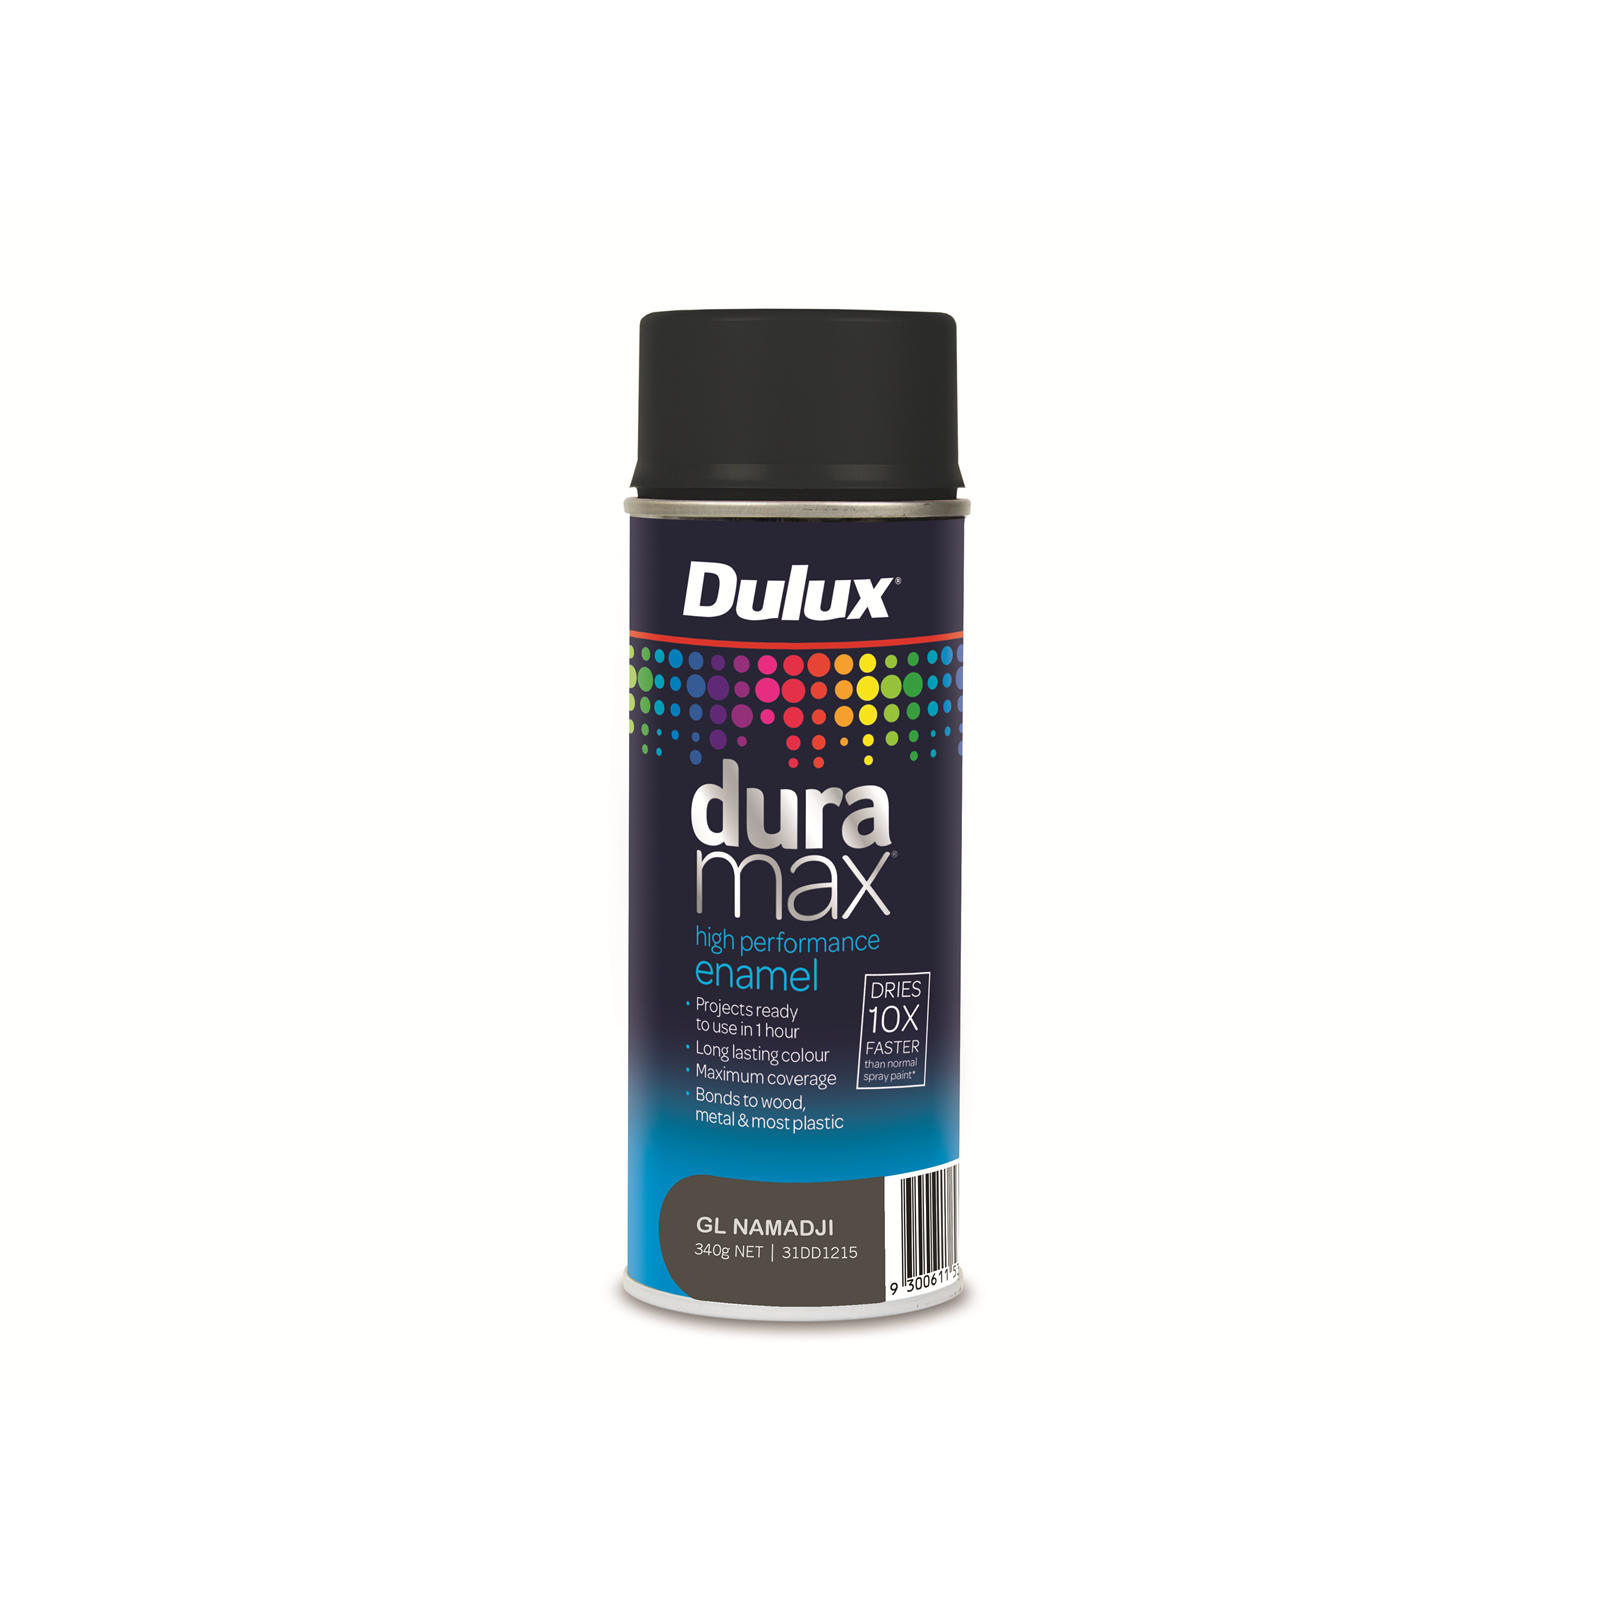 Dulux Duramax 340g Gloss Namadji Spray Paint